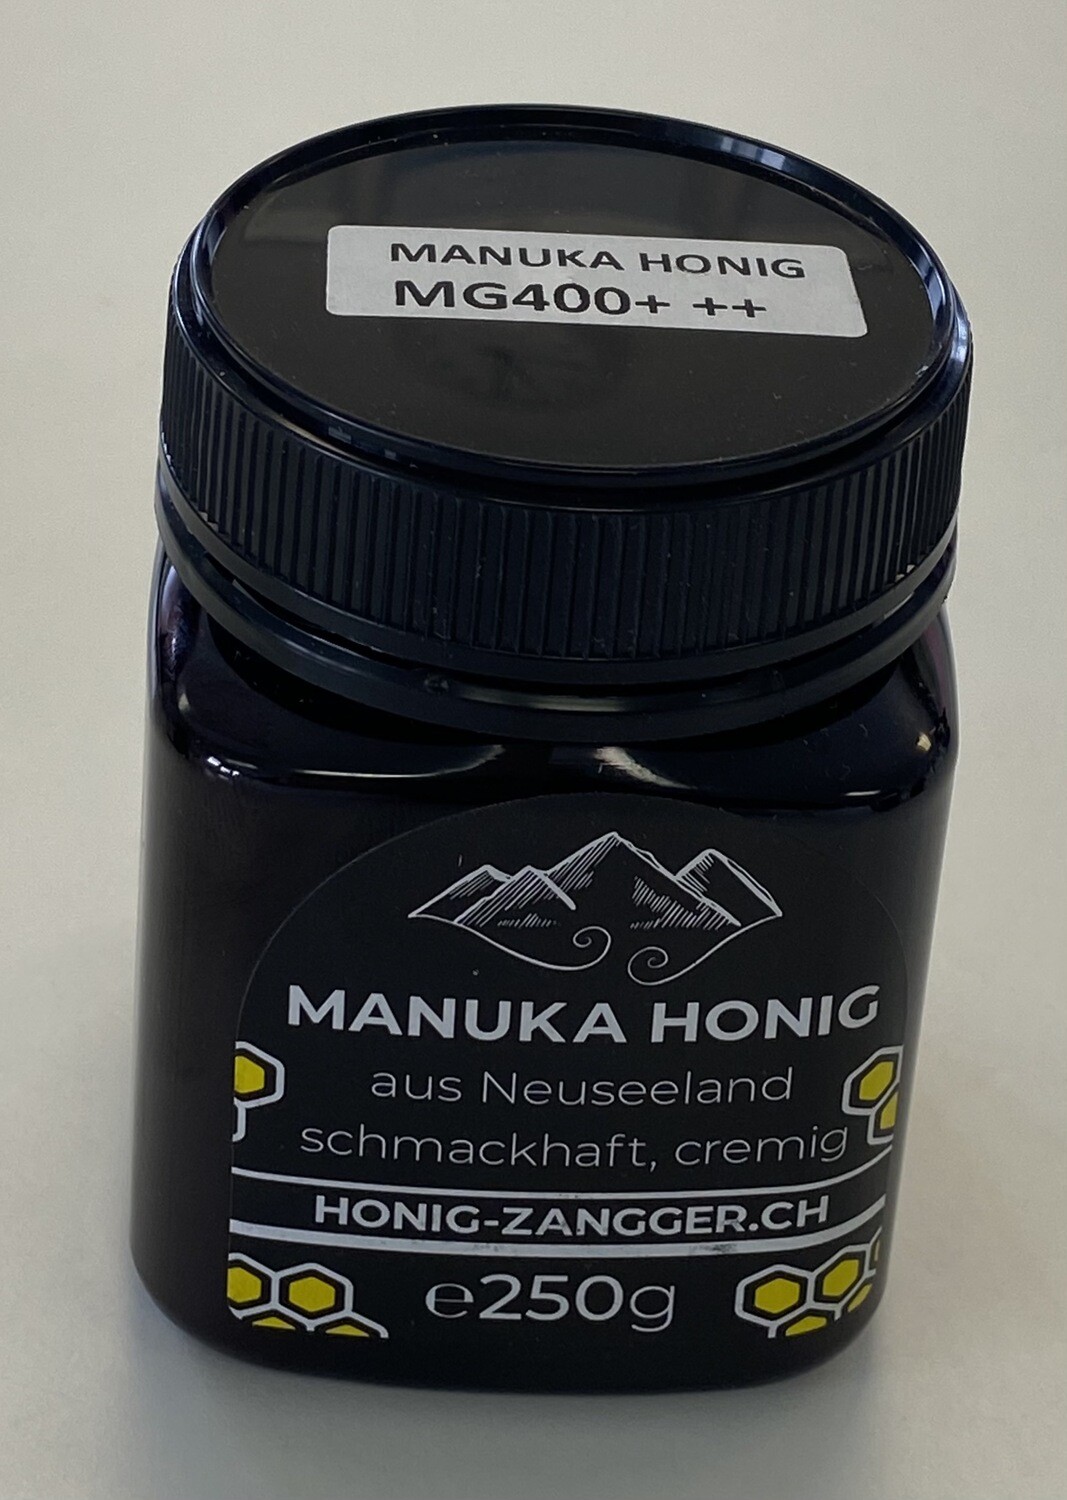 Manuka Honig MG 400+